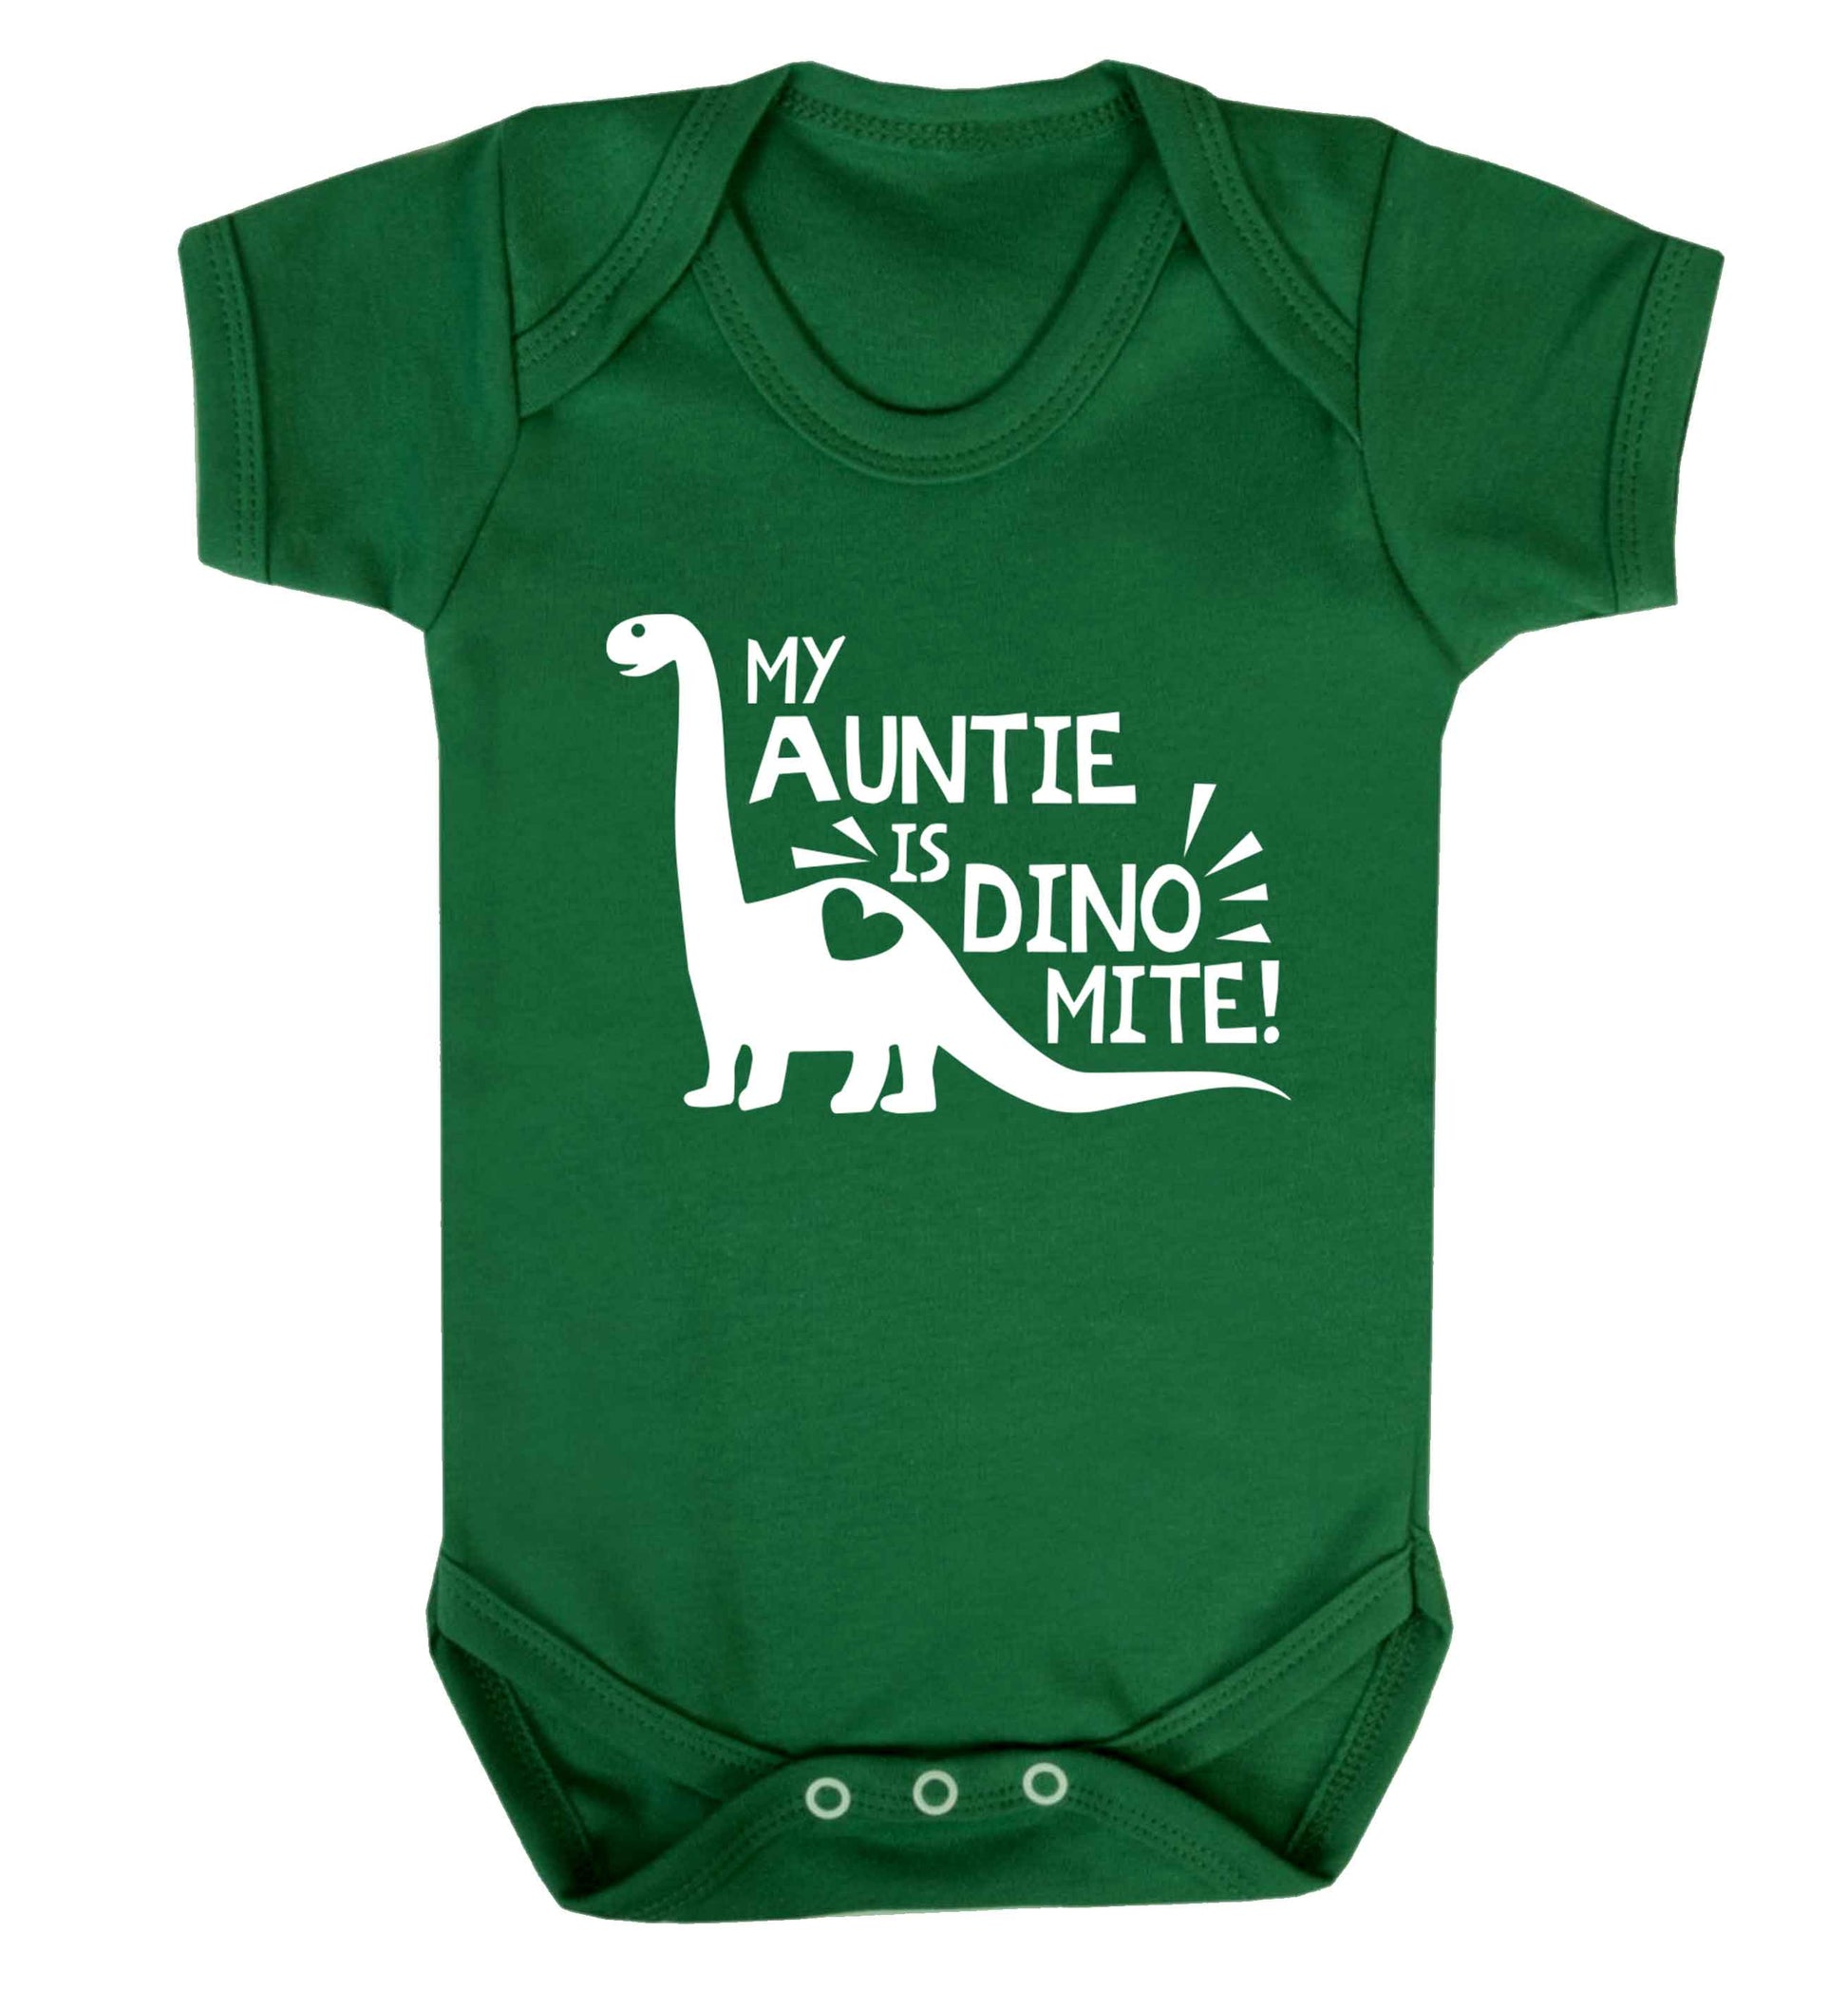 My auntie is dinomite! Baby Vest green 18-24 months